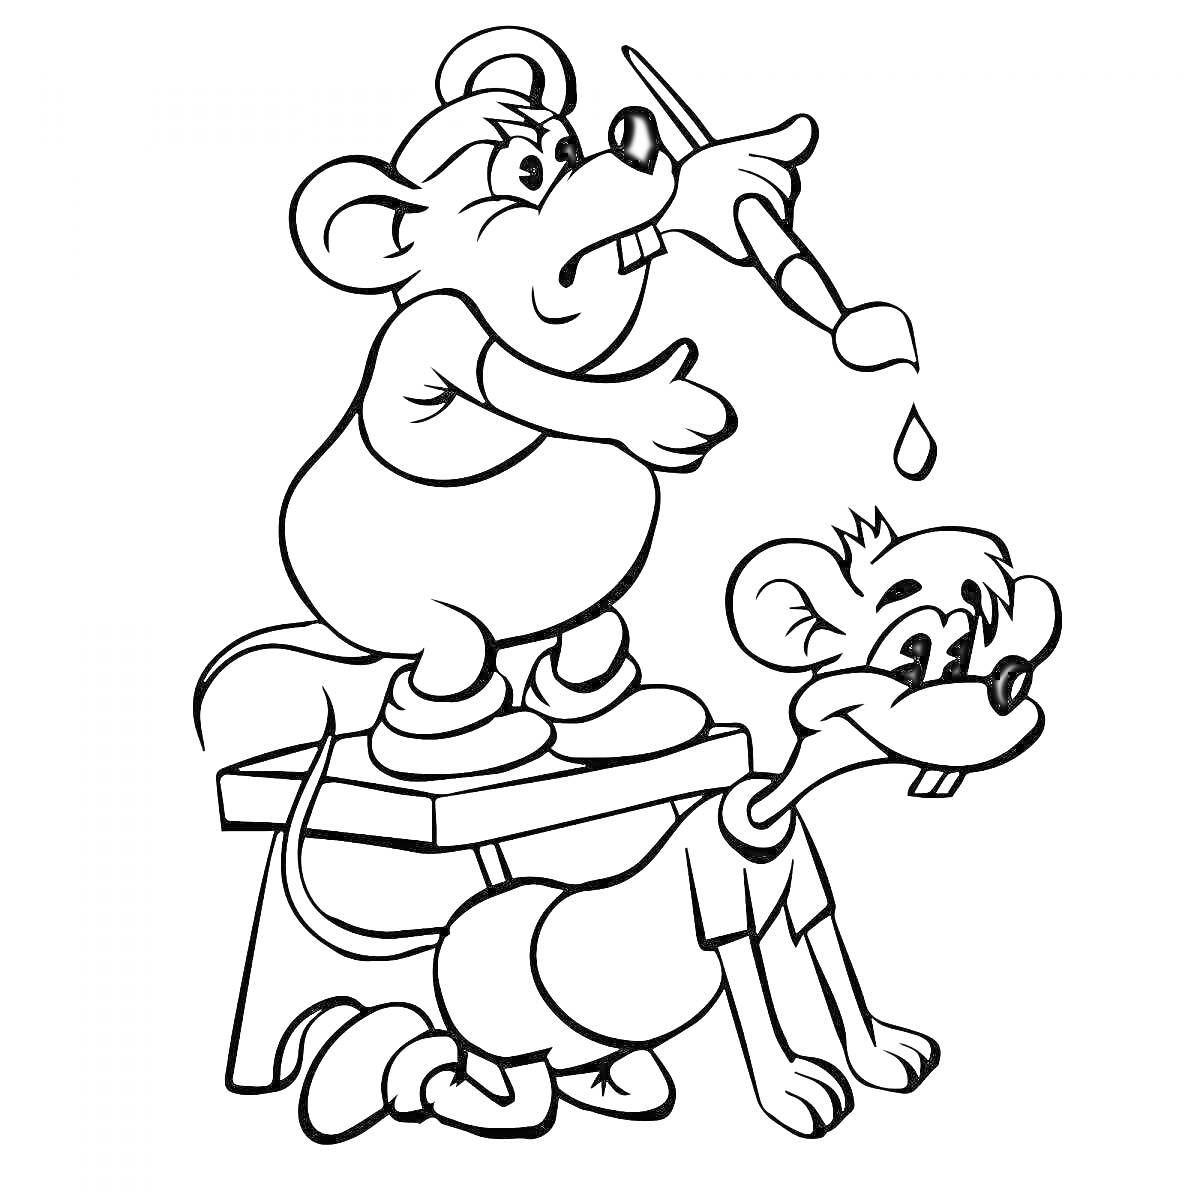 Раскраска Мыши Леопольда, один мышонок с кистью на спине другого